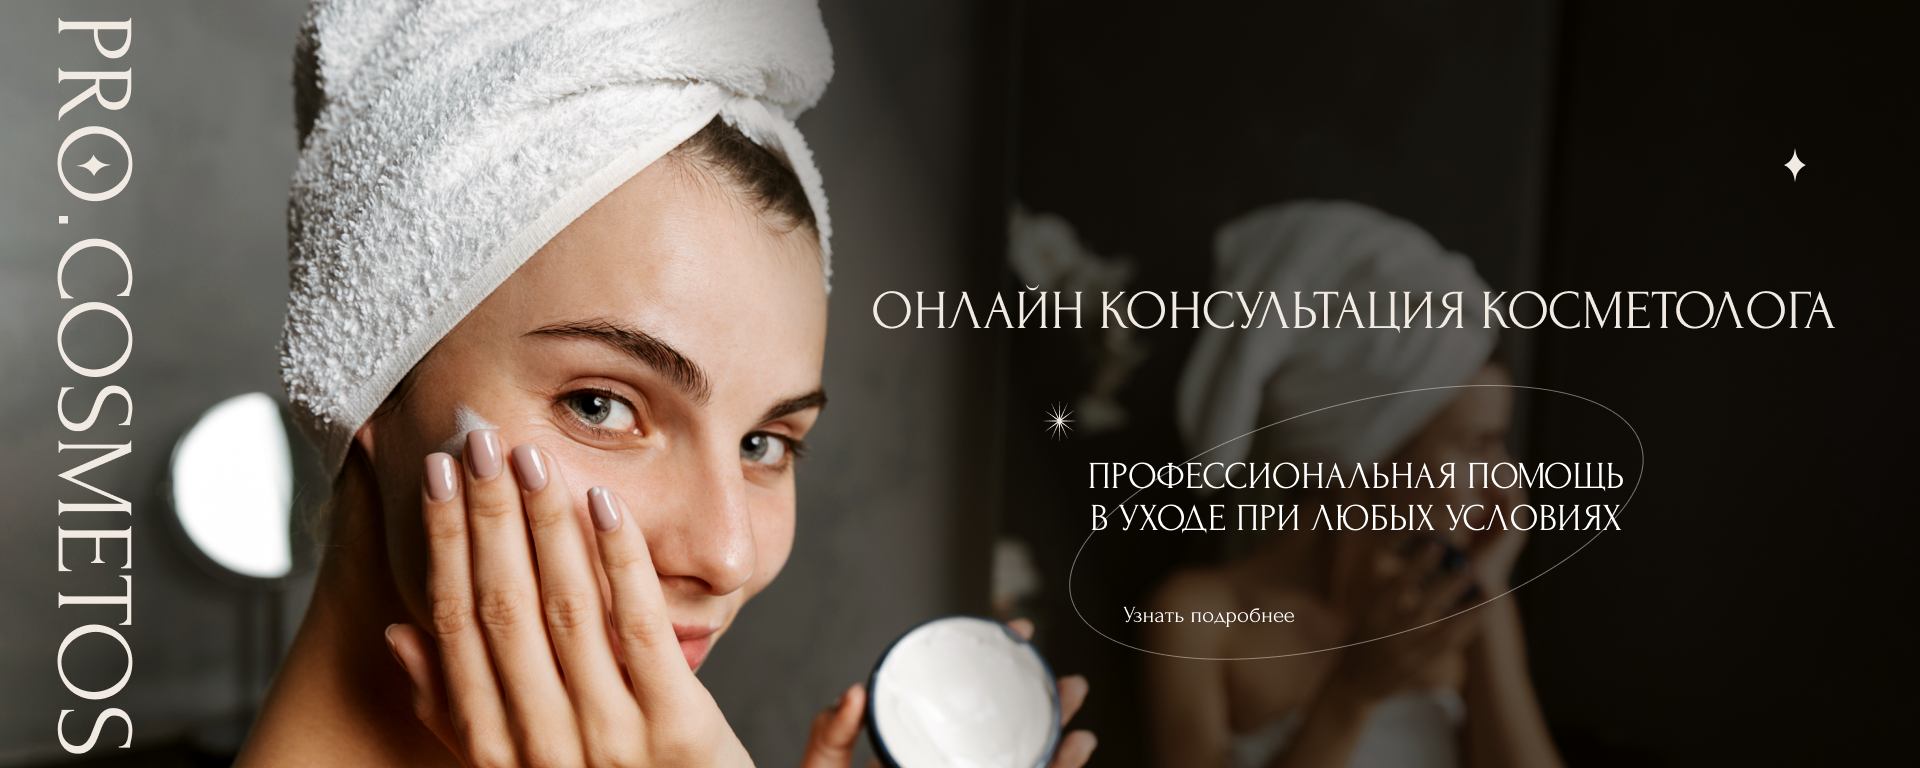 консультация косметолога онлайн на сайте Про.косметос